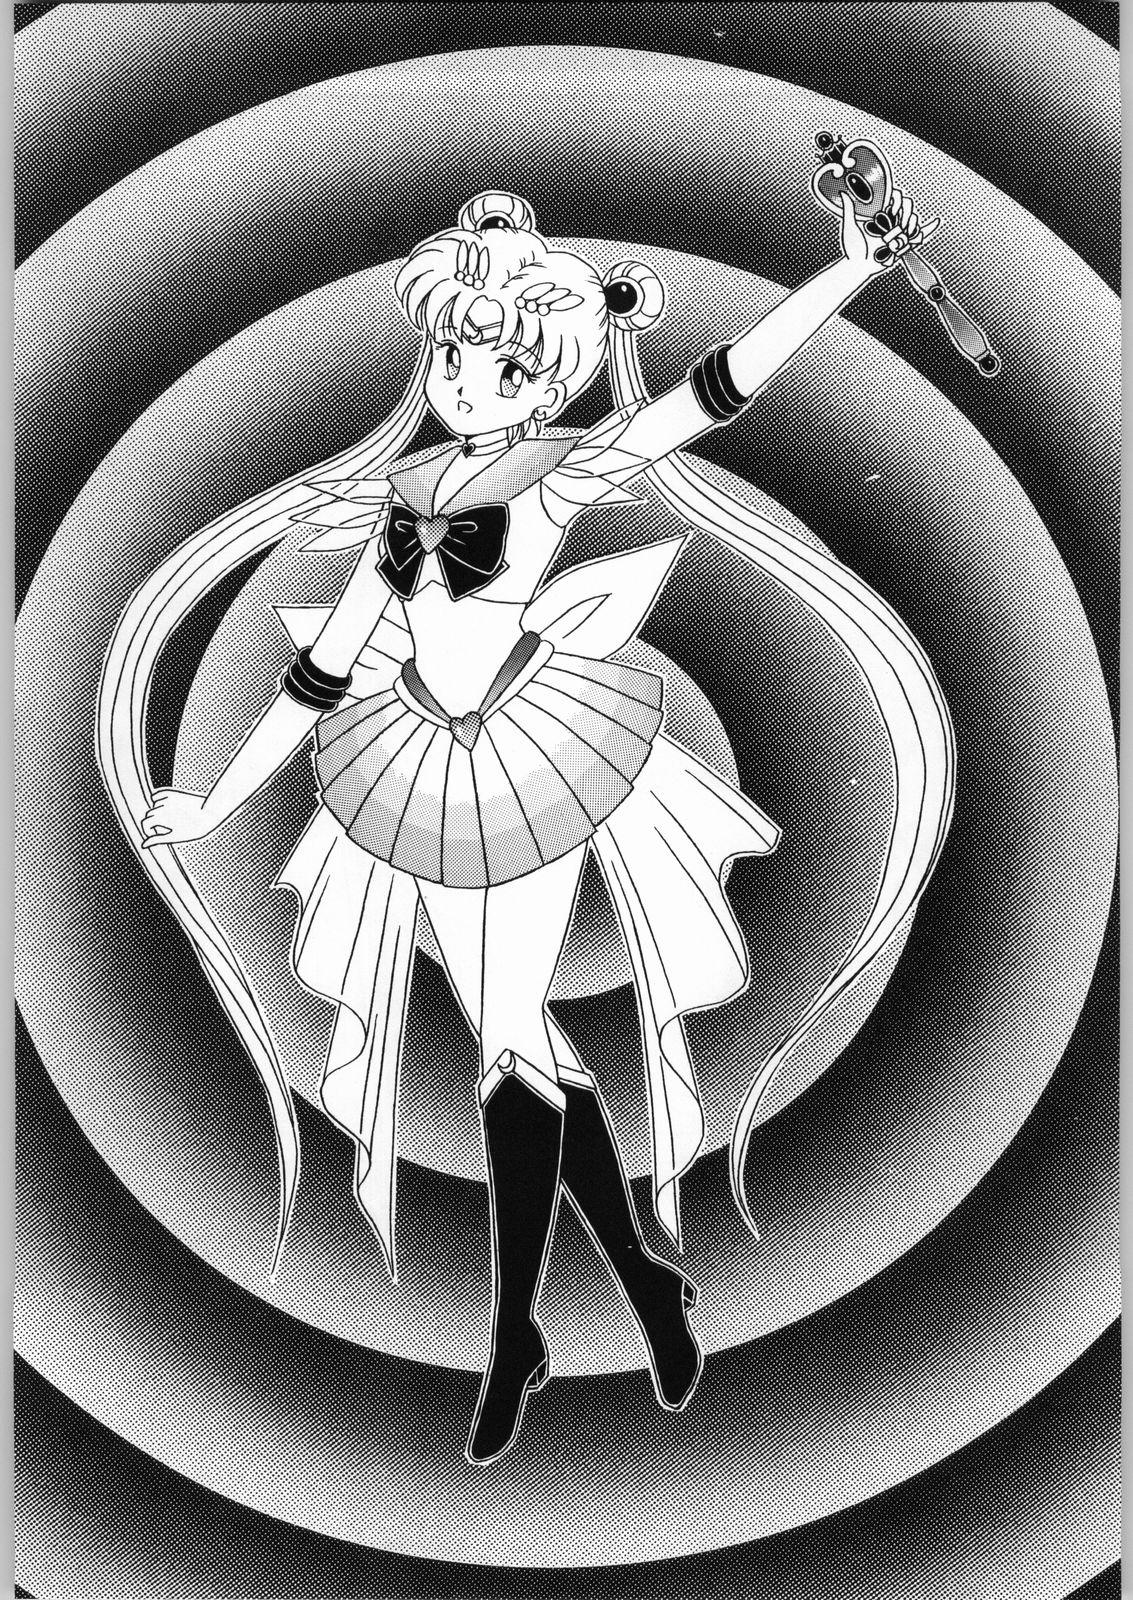 Daring Dance of Princess 4 - Sailor moon Tenchi muyo Akazukin cha cha Lord of lords ryu knight Minky momo Blowjob - Page 5